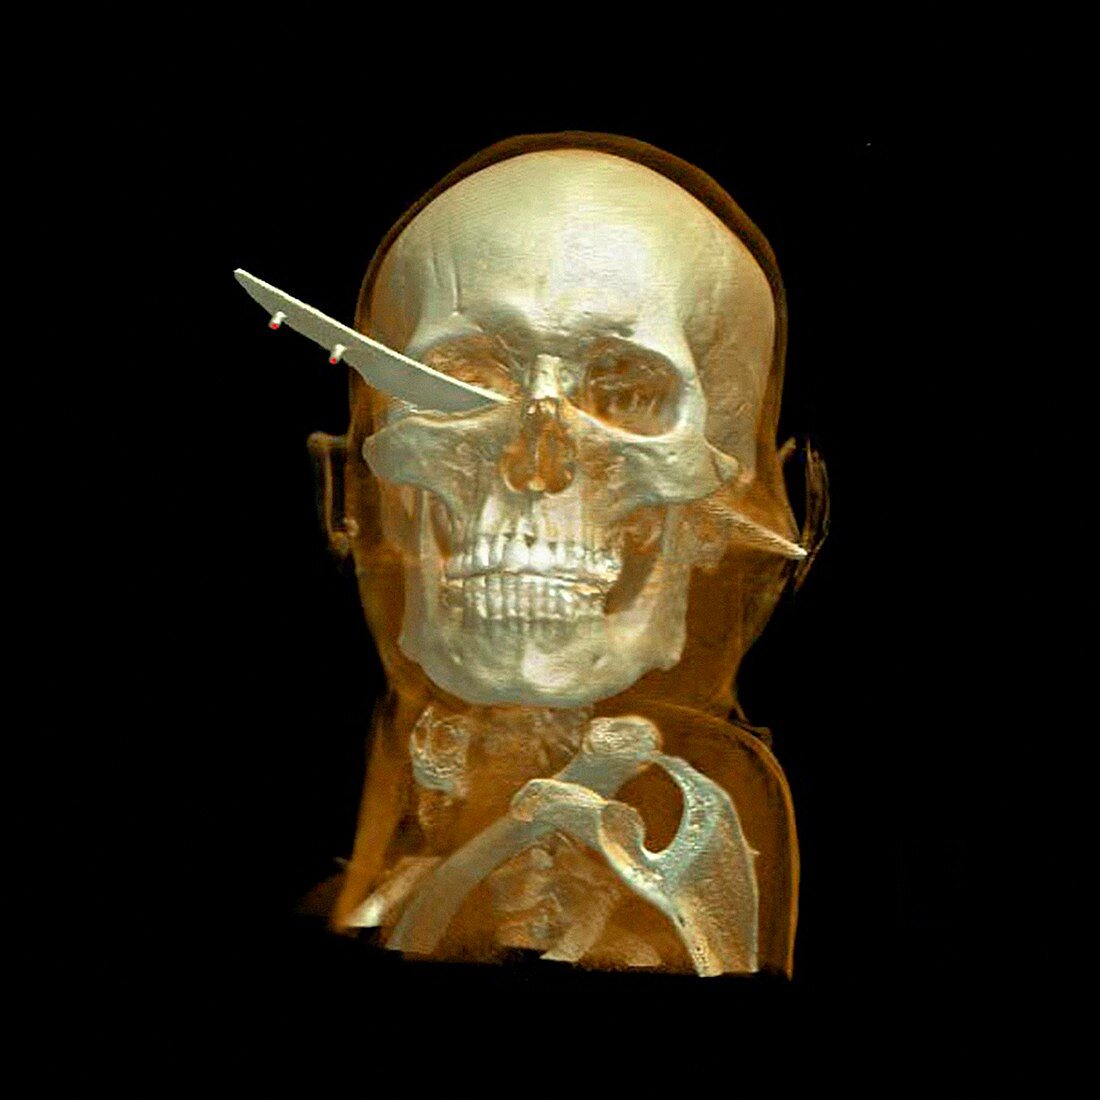 Knife skull injury,CT scan